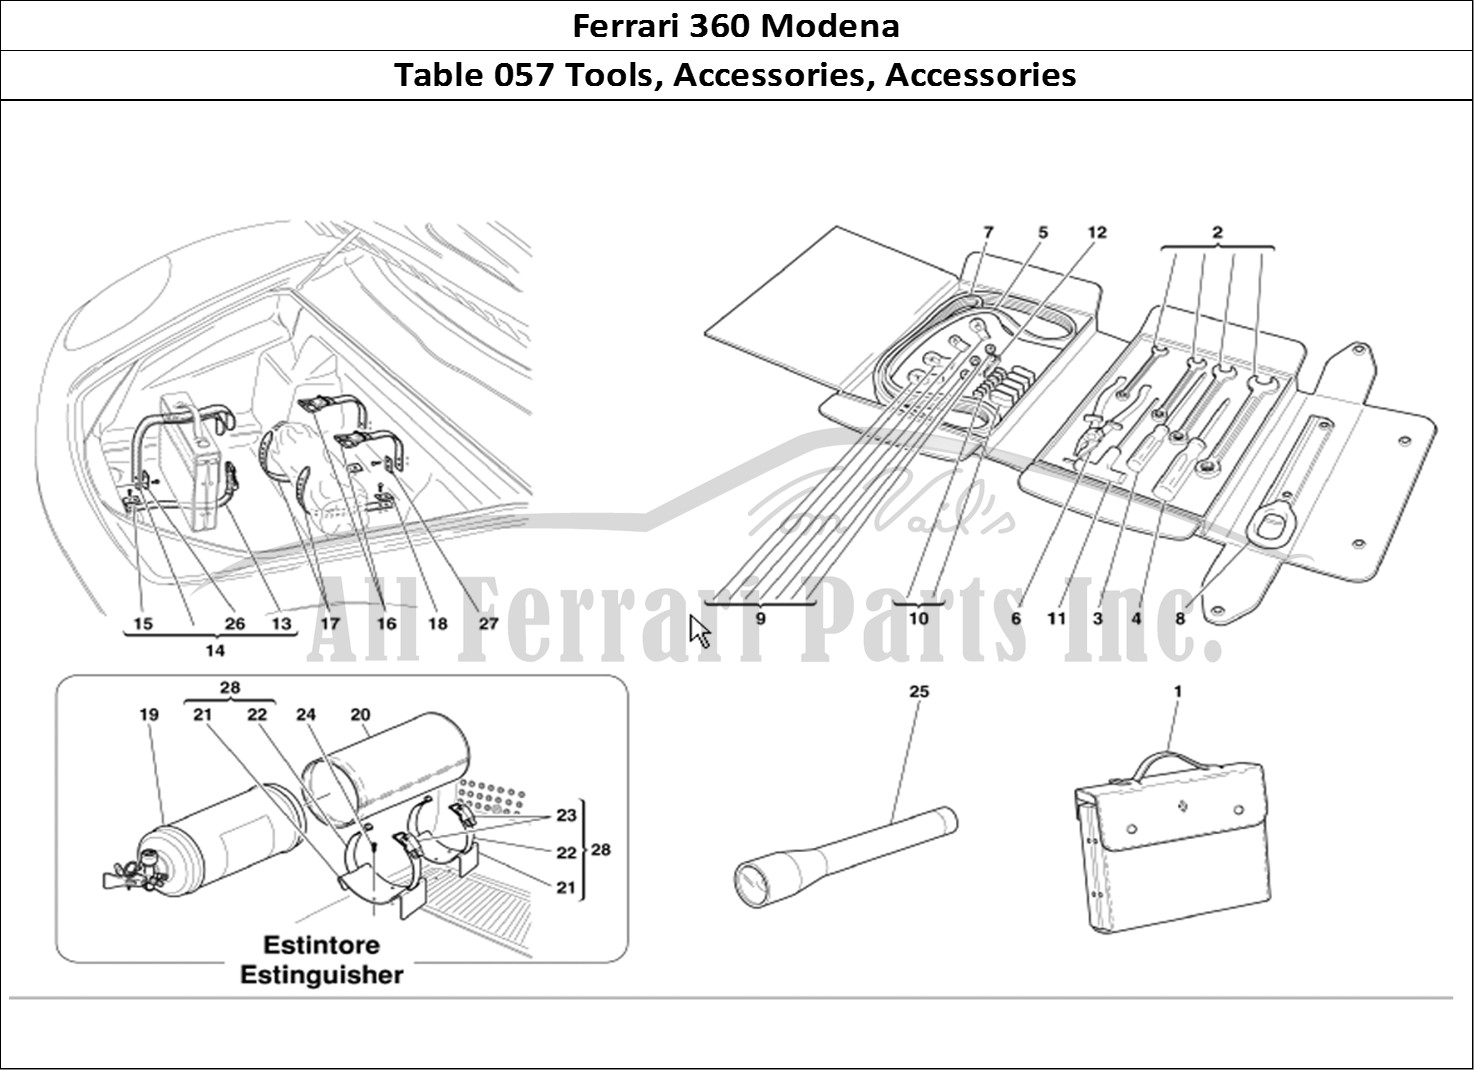 Ferrari Parts Ferrari 360 Modena Page 057 Tools Equipment and Acces